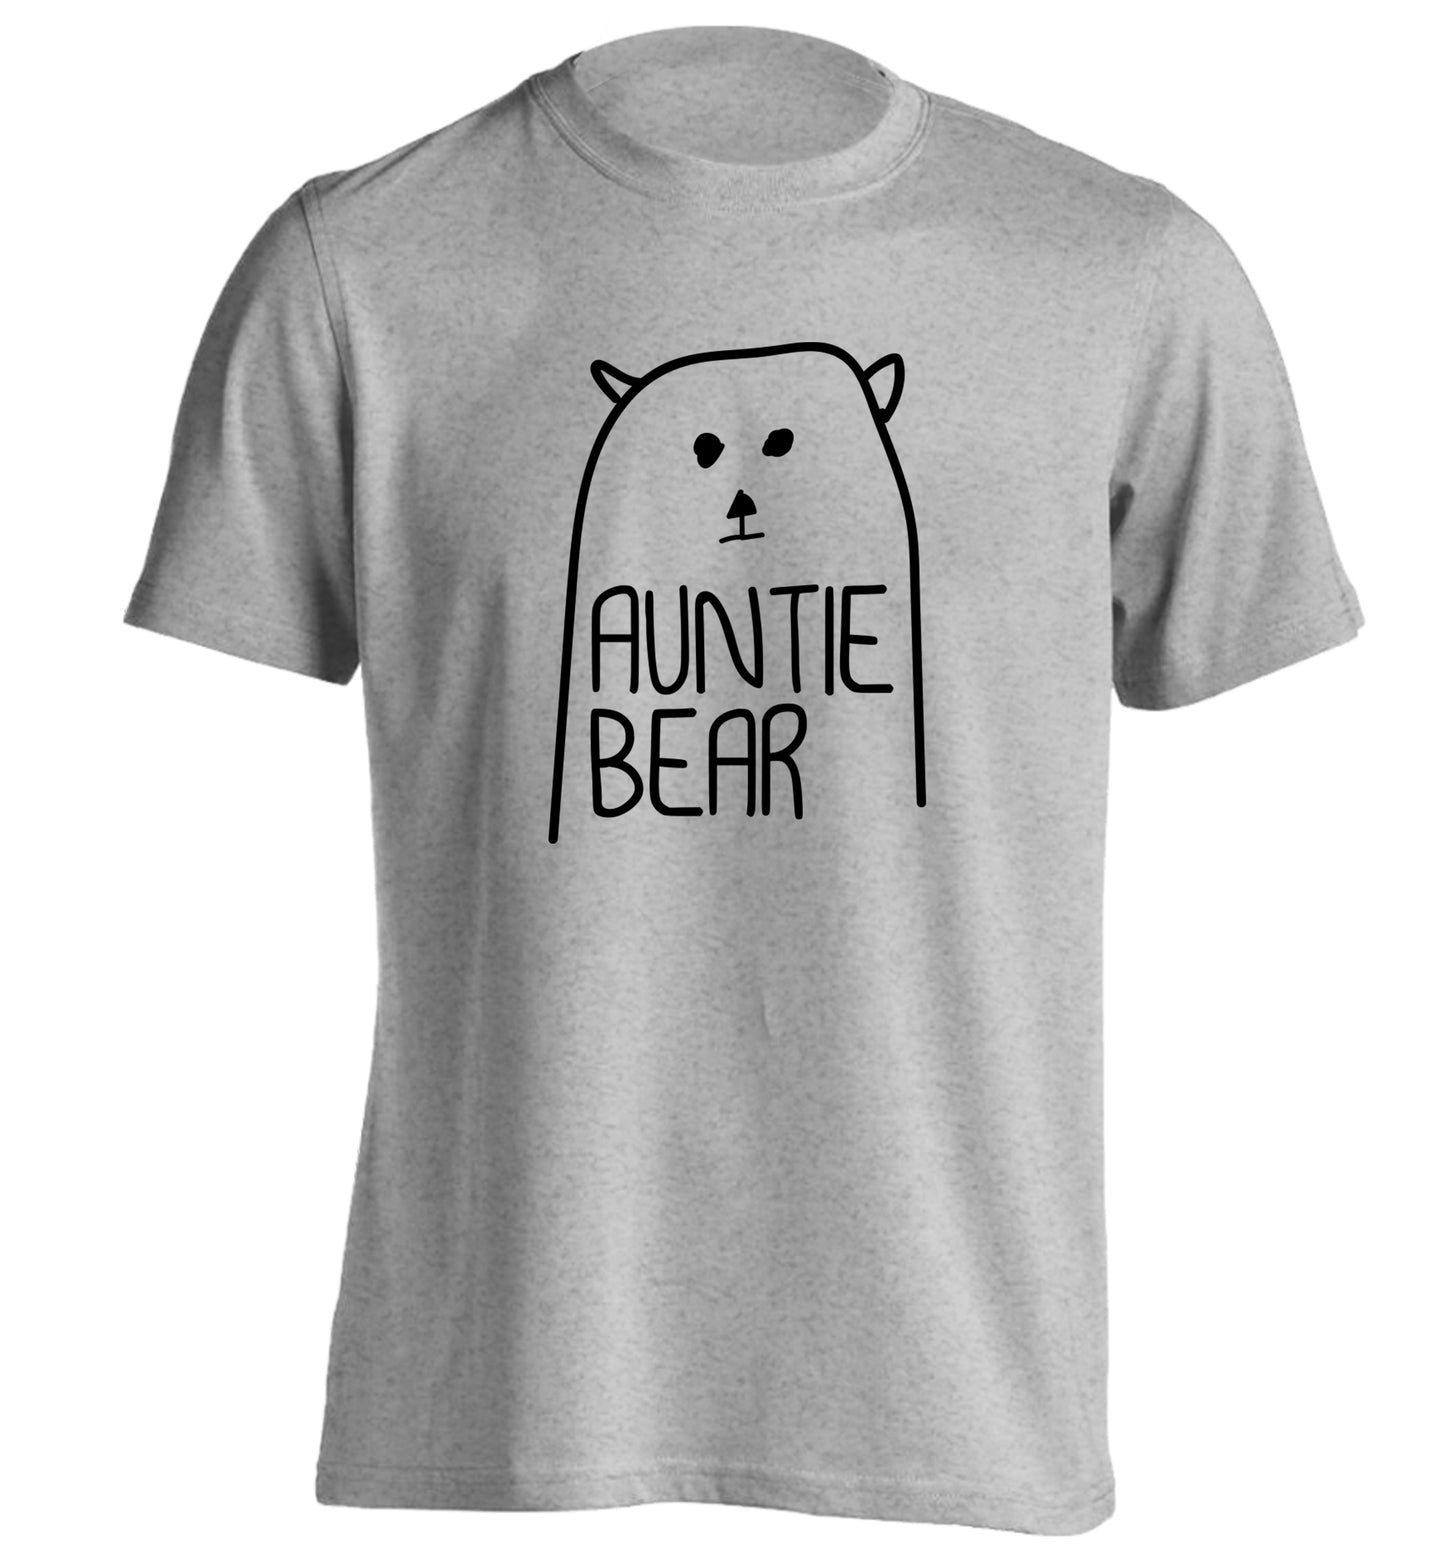 Auntie bear adults unisex grey Tshirt 2XL